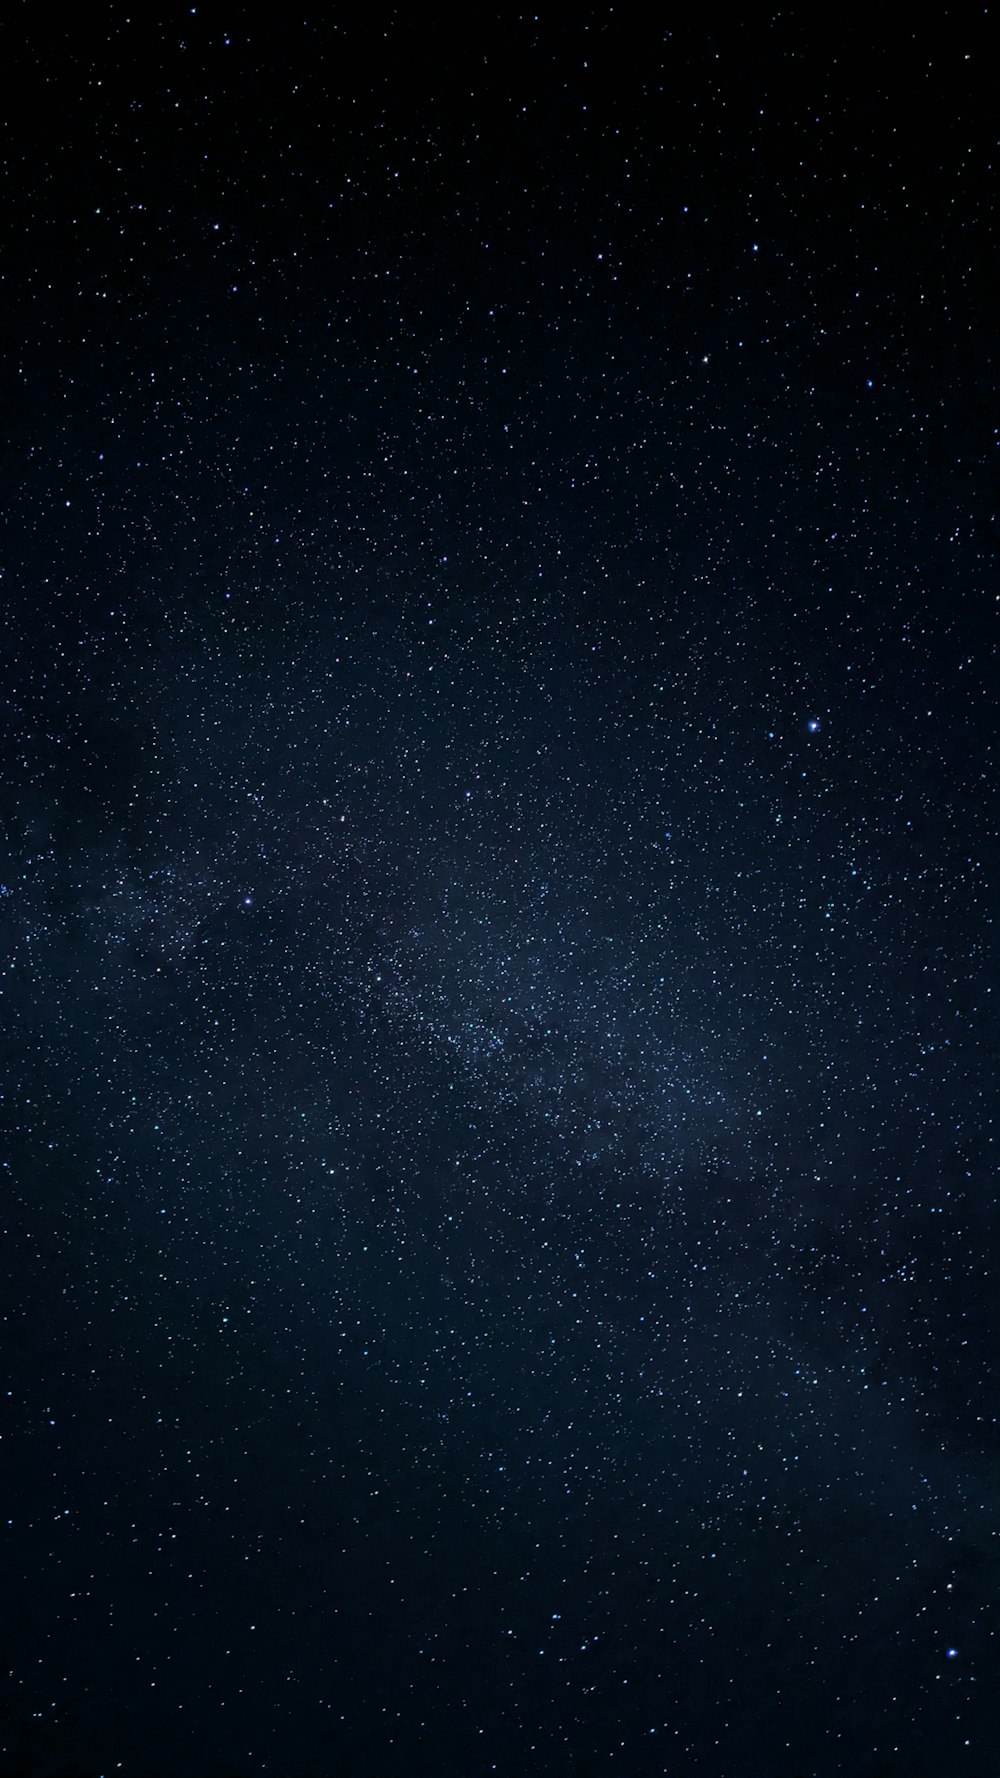 밤의 별이 빛나는 밤하늘 사진 – Unsplash의 무료 텍스처 이미지